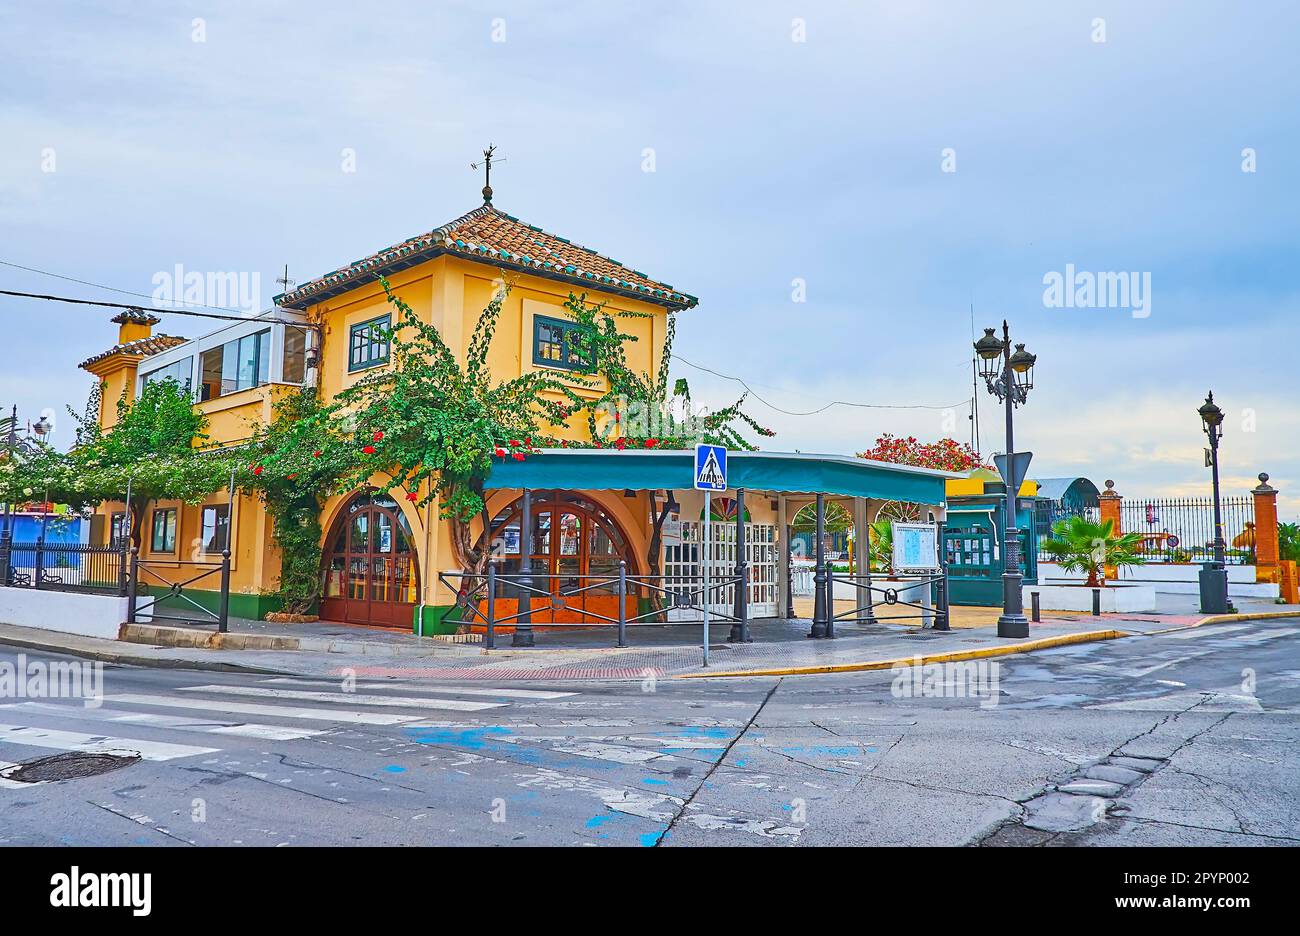 La belle façade du bar à tapas vintage, situé sur la Plaza de las Galeras Reales et décoré avec des buissons fleuris, El Puerto, Espagne Banque D'Images